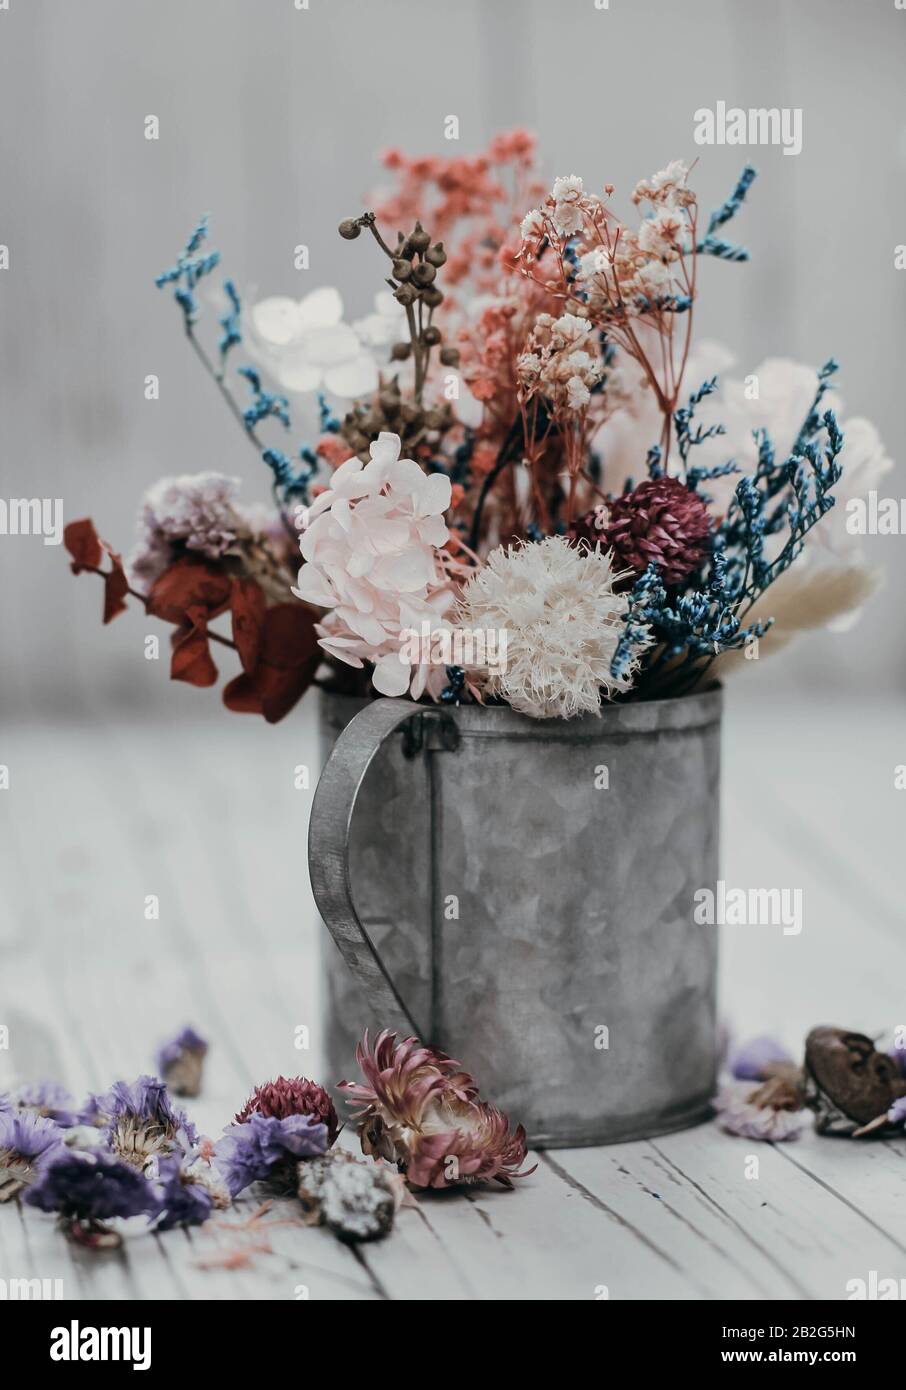 Fiori secchi in una tazza rustica. Composizione boho. Composizione floreale romantica. Foto Stock